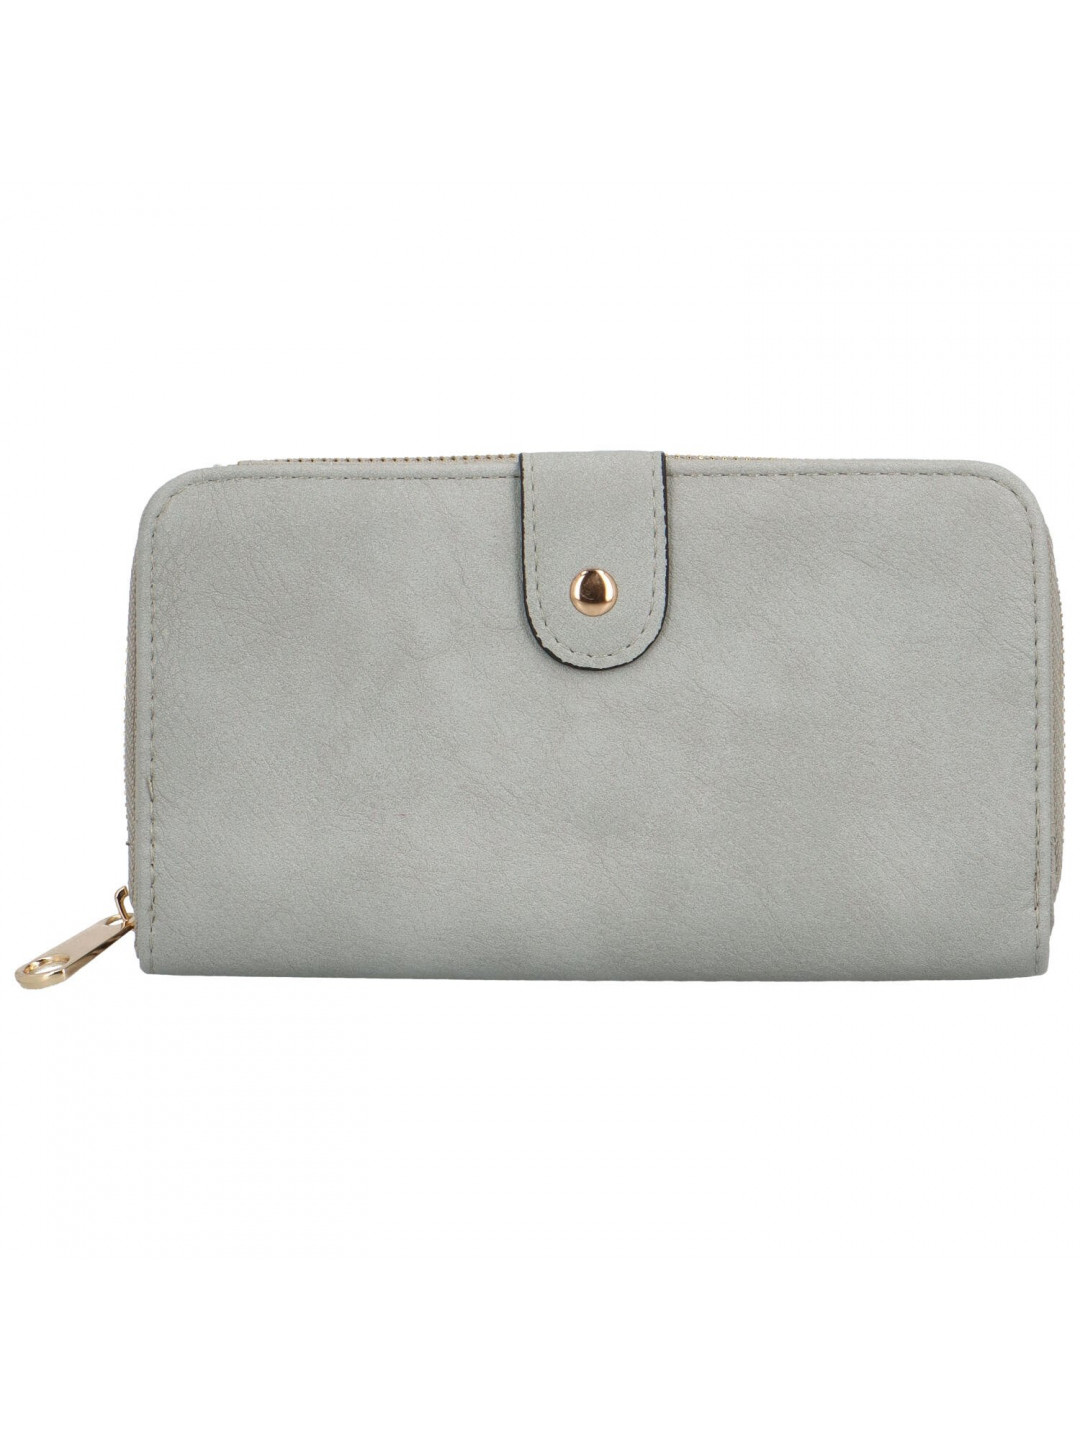 Trendy dámská koženková peněženka Bellina šedá